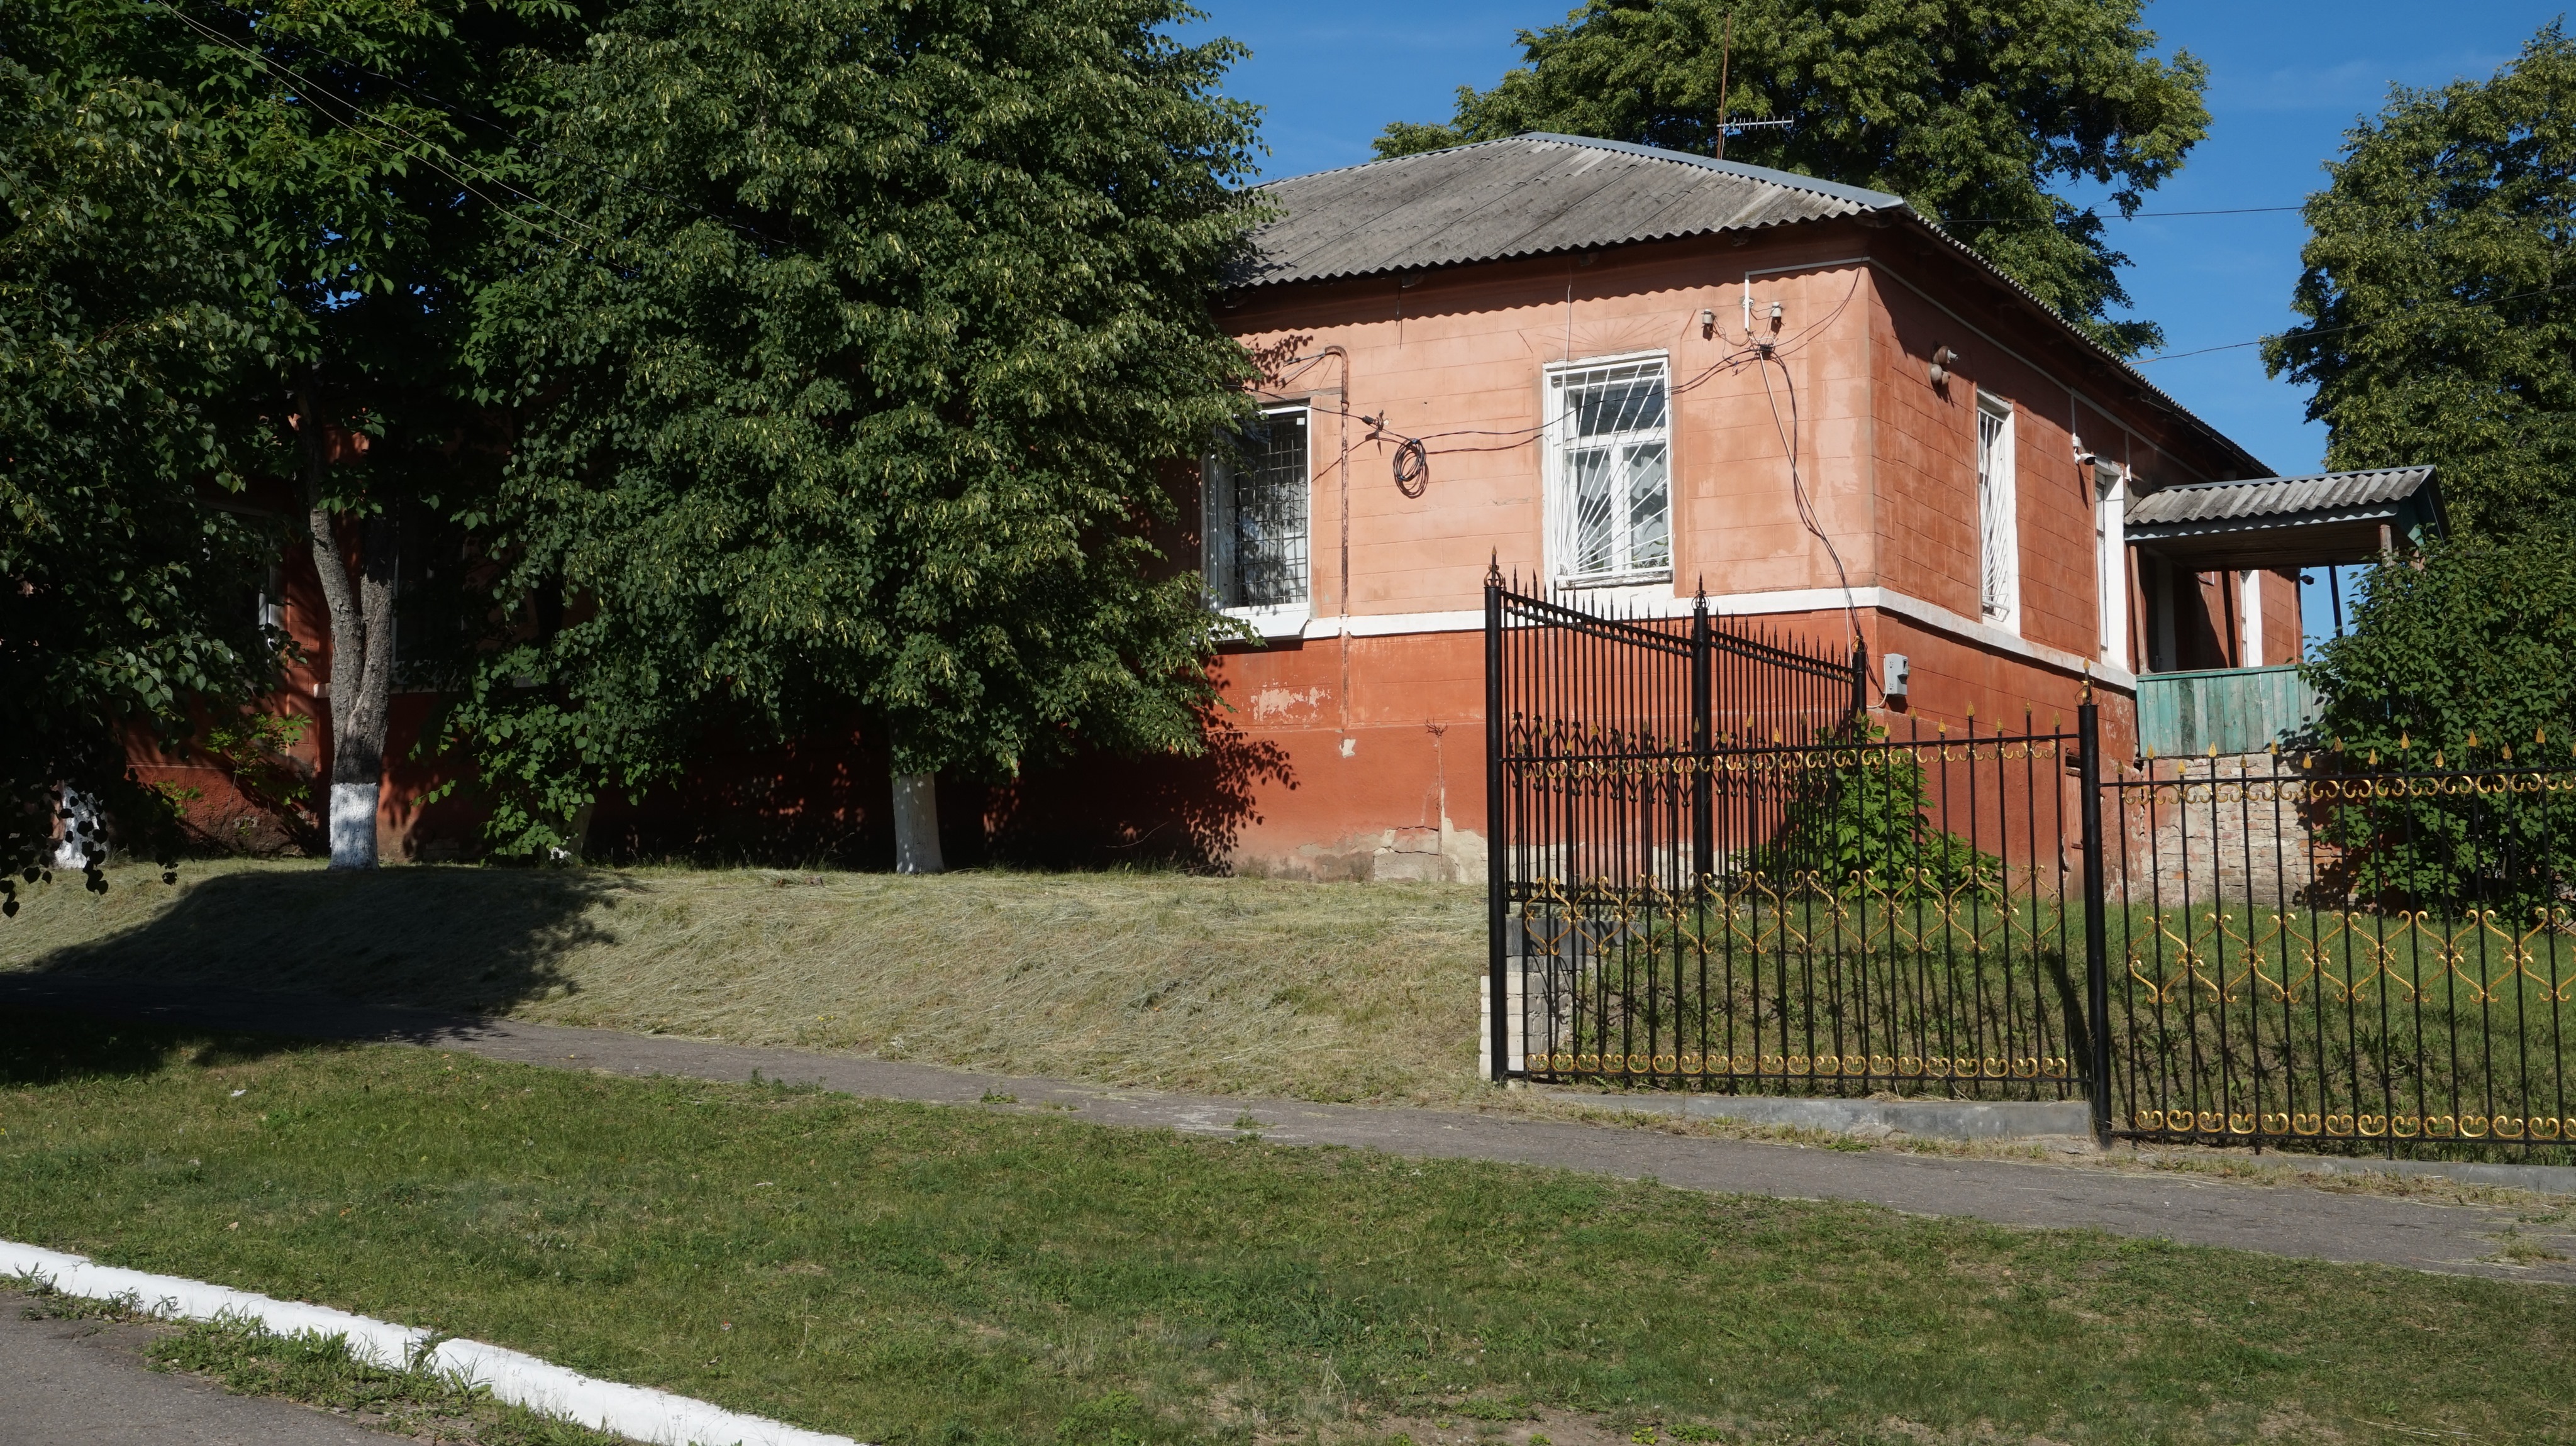 усадебный дом Ковалевских в имении Пан Ивановка Скородиновка, фото А. Парамонова 2018 год